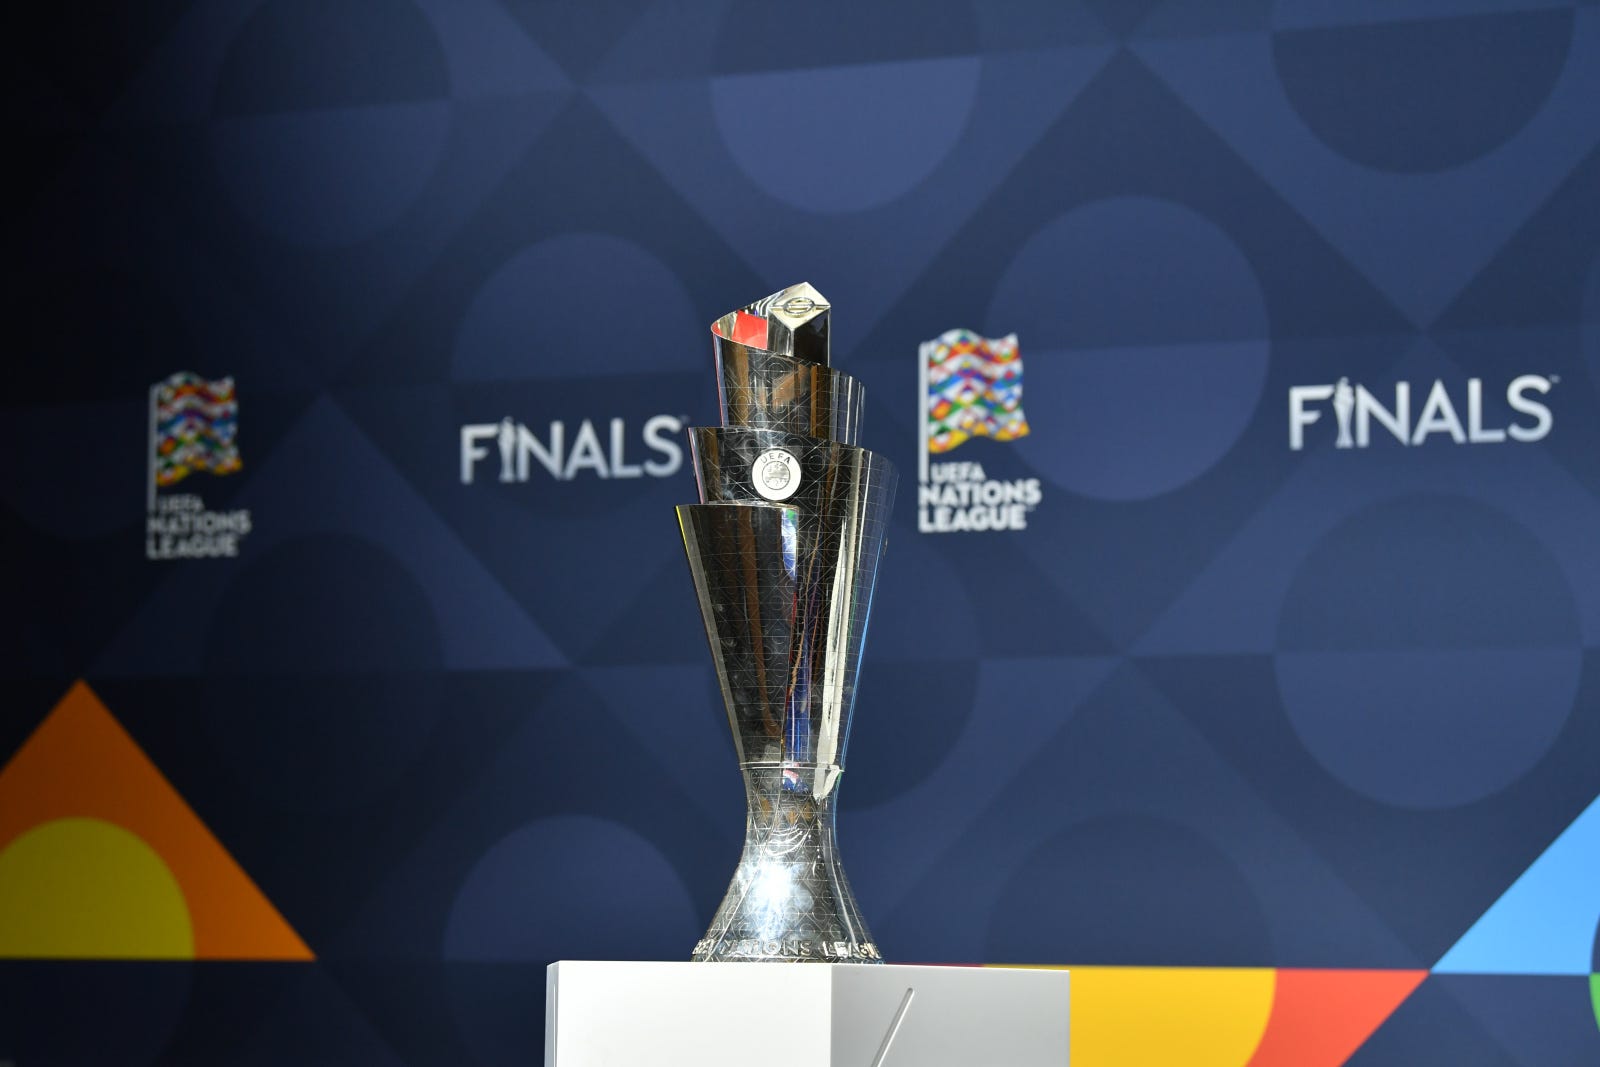 Final Four de la UEFA Nations League 2021 cuándo y dónde es, fecha